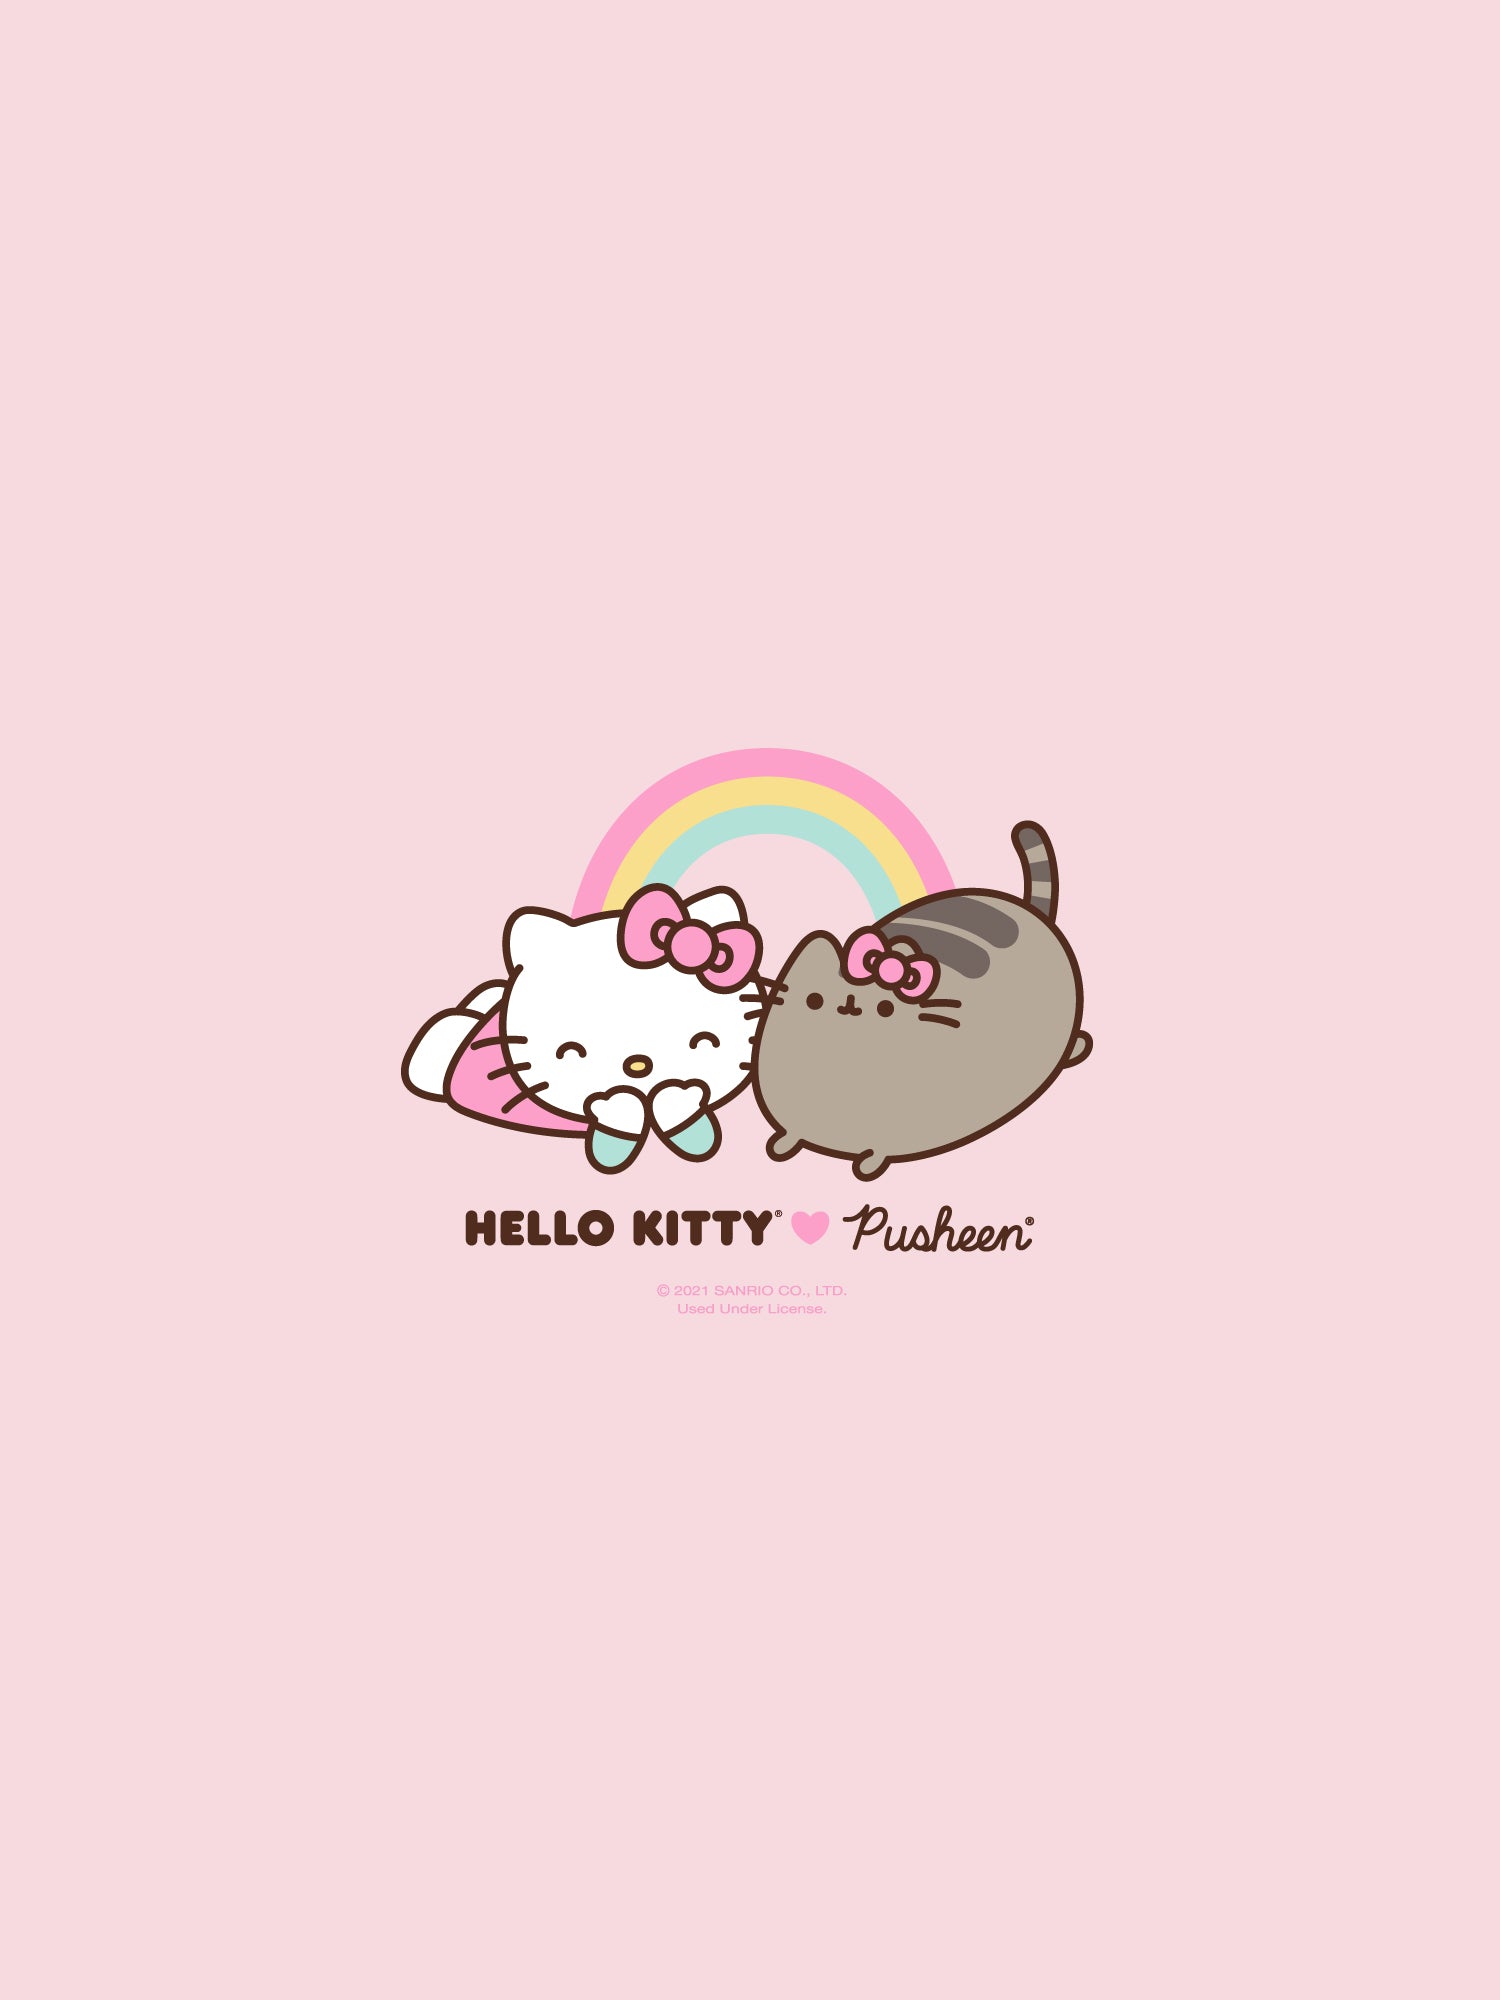 Hello Kitty x Pusheen